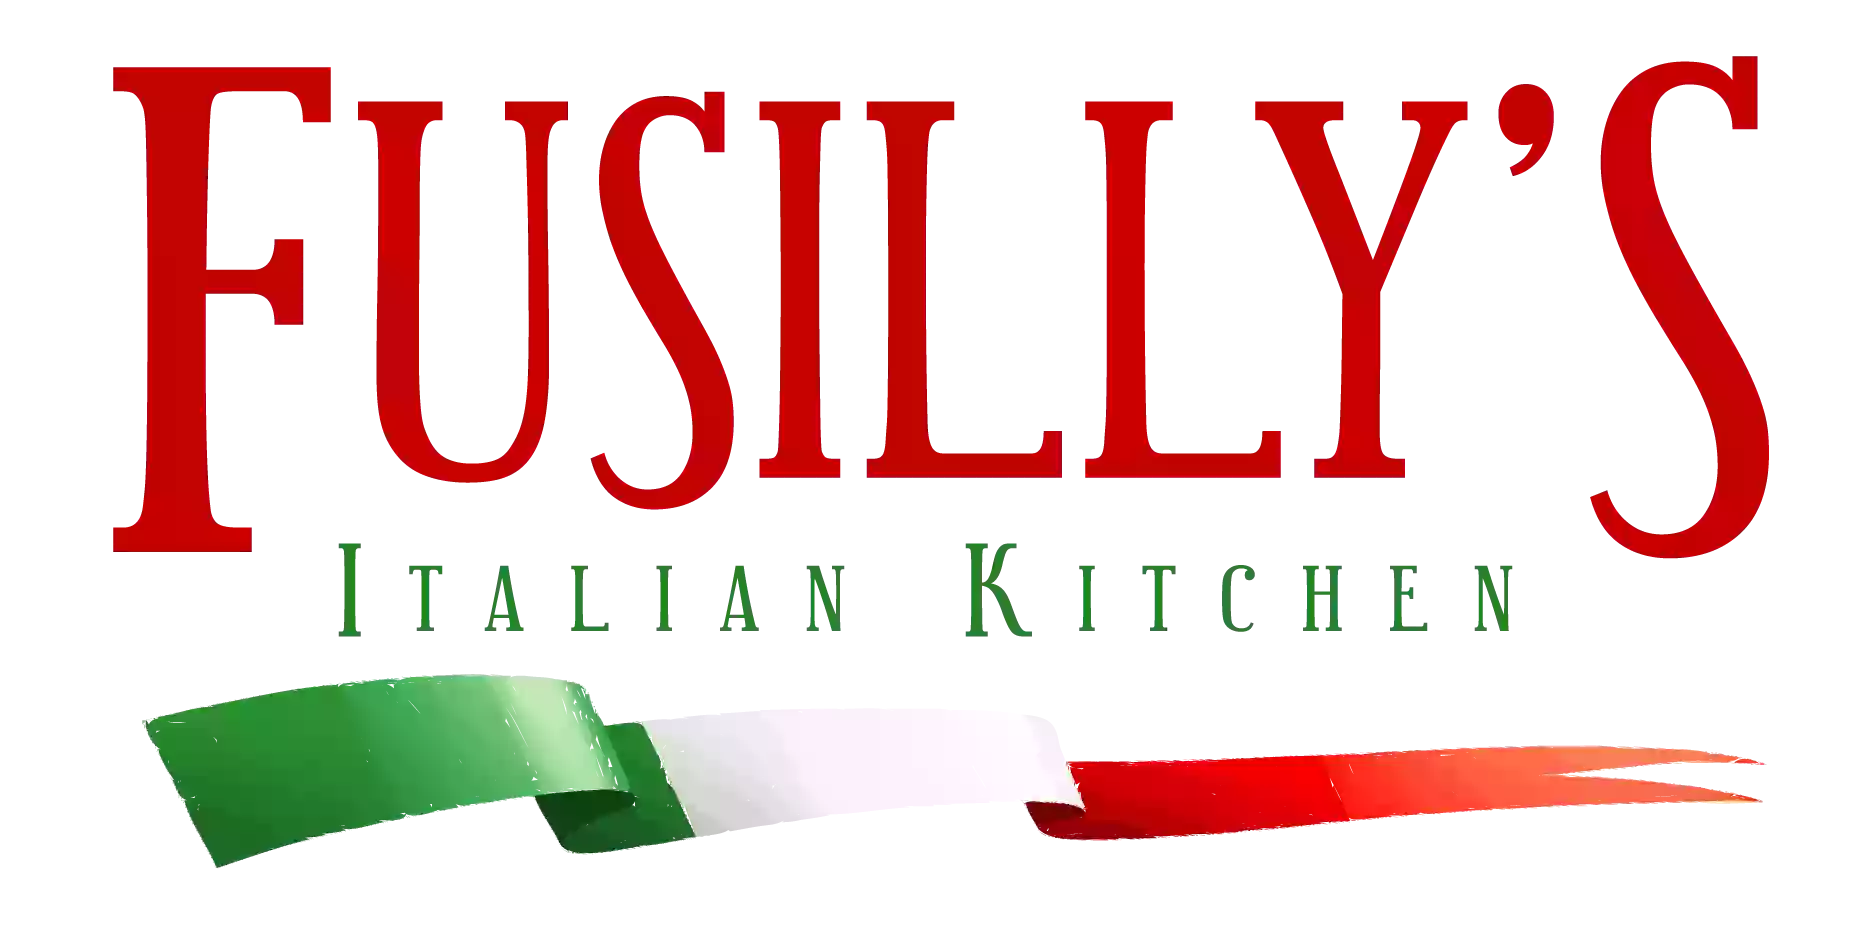 Fusilly's Italian Kitchen